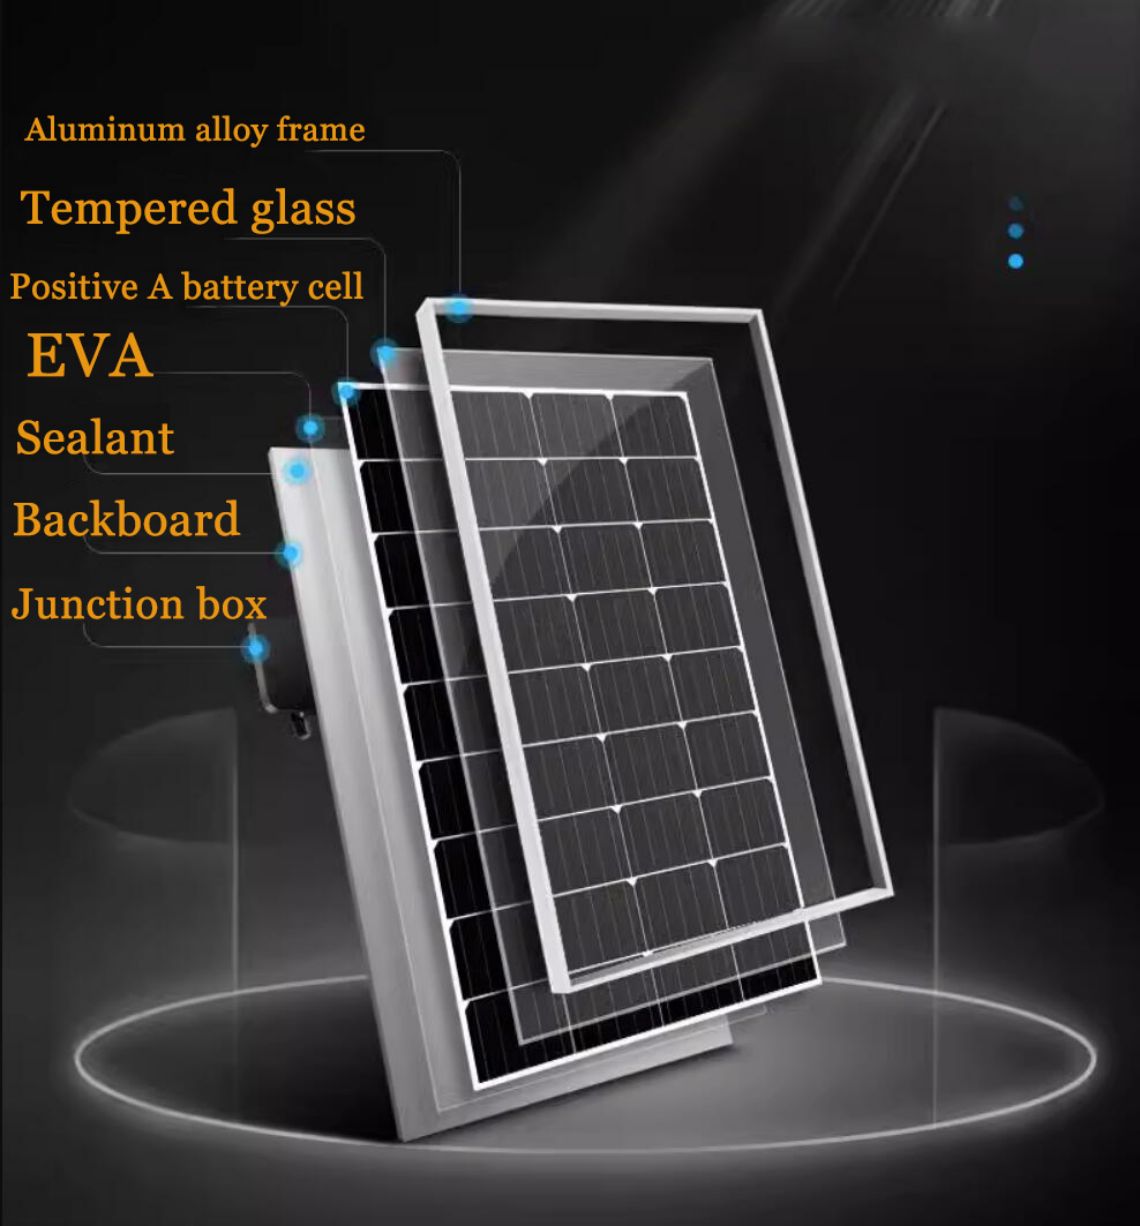 Saules monokristāliskā silīcija vienpusējs N-TOPCon modulis ir sava veida augstas efektivitātes saules fotoelektriskais modulis.Tas ir ražots, izmantojot monokristāliskā silīcija materiālu, un tam ir vienpusēja N-TOPCon struktūra.Šī struktūra var uzlabot fotoelektriskās pārveidošanas efektivitāti un nodrošināt labāku strāvas izvadi.